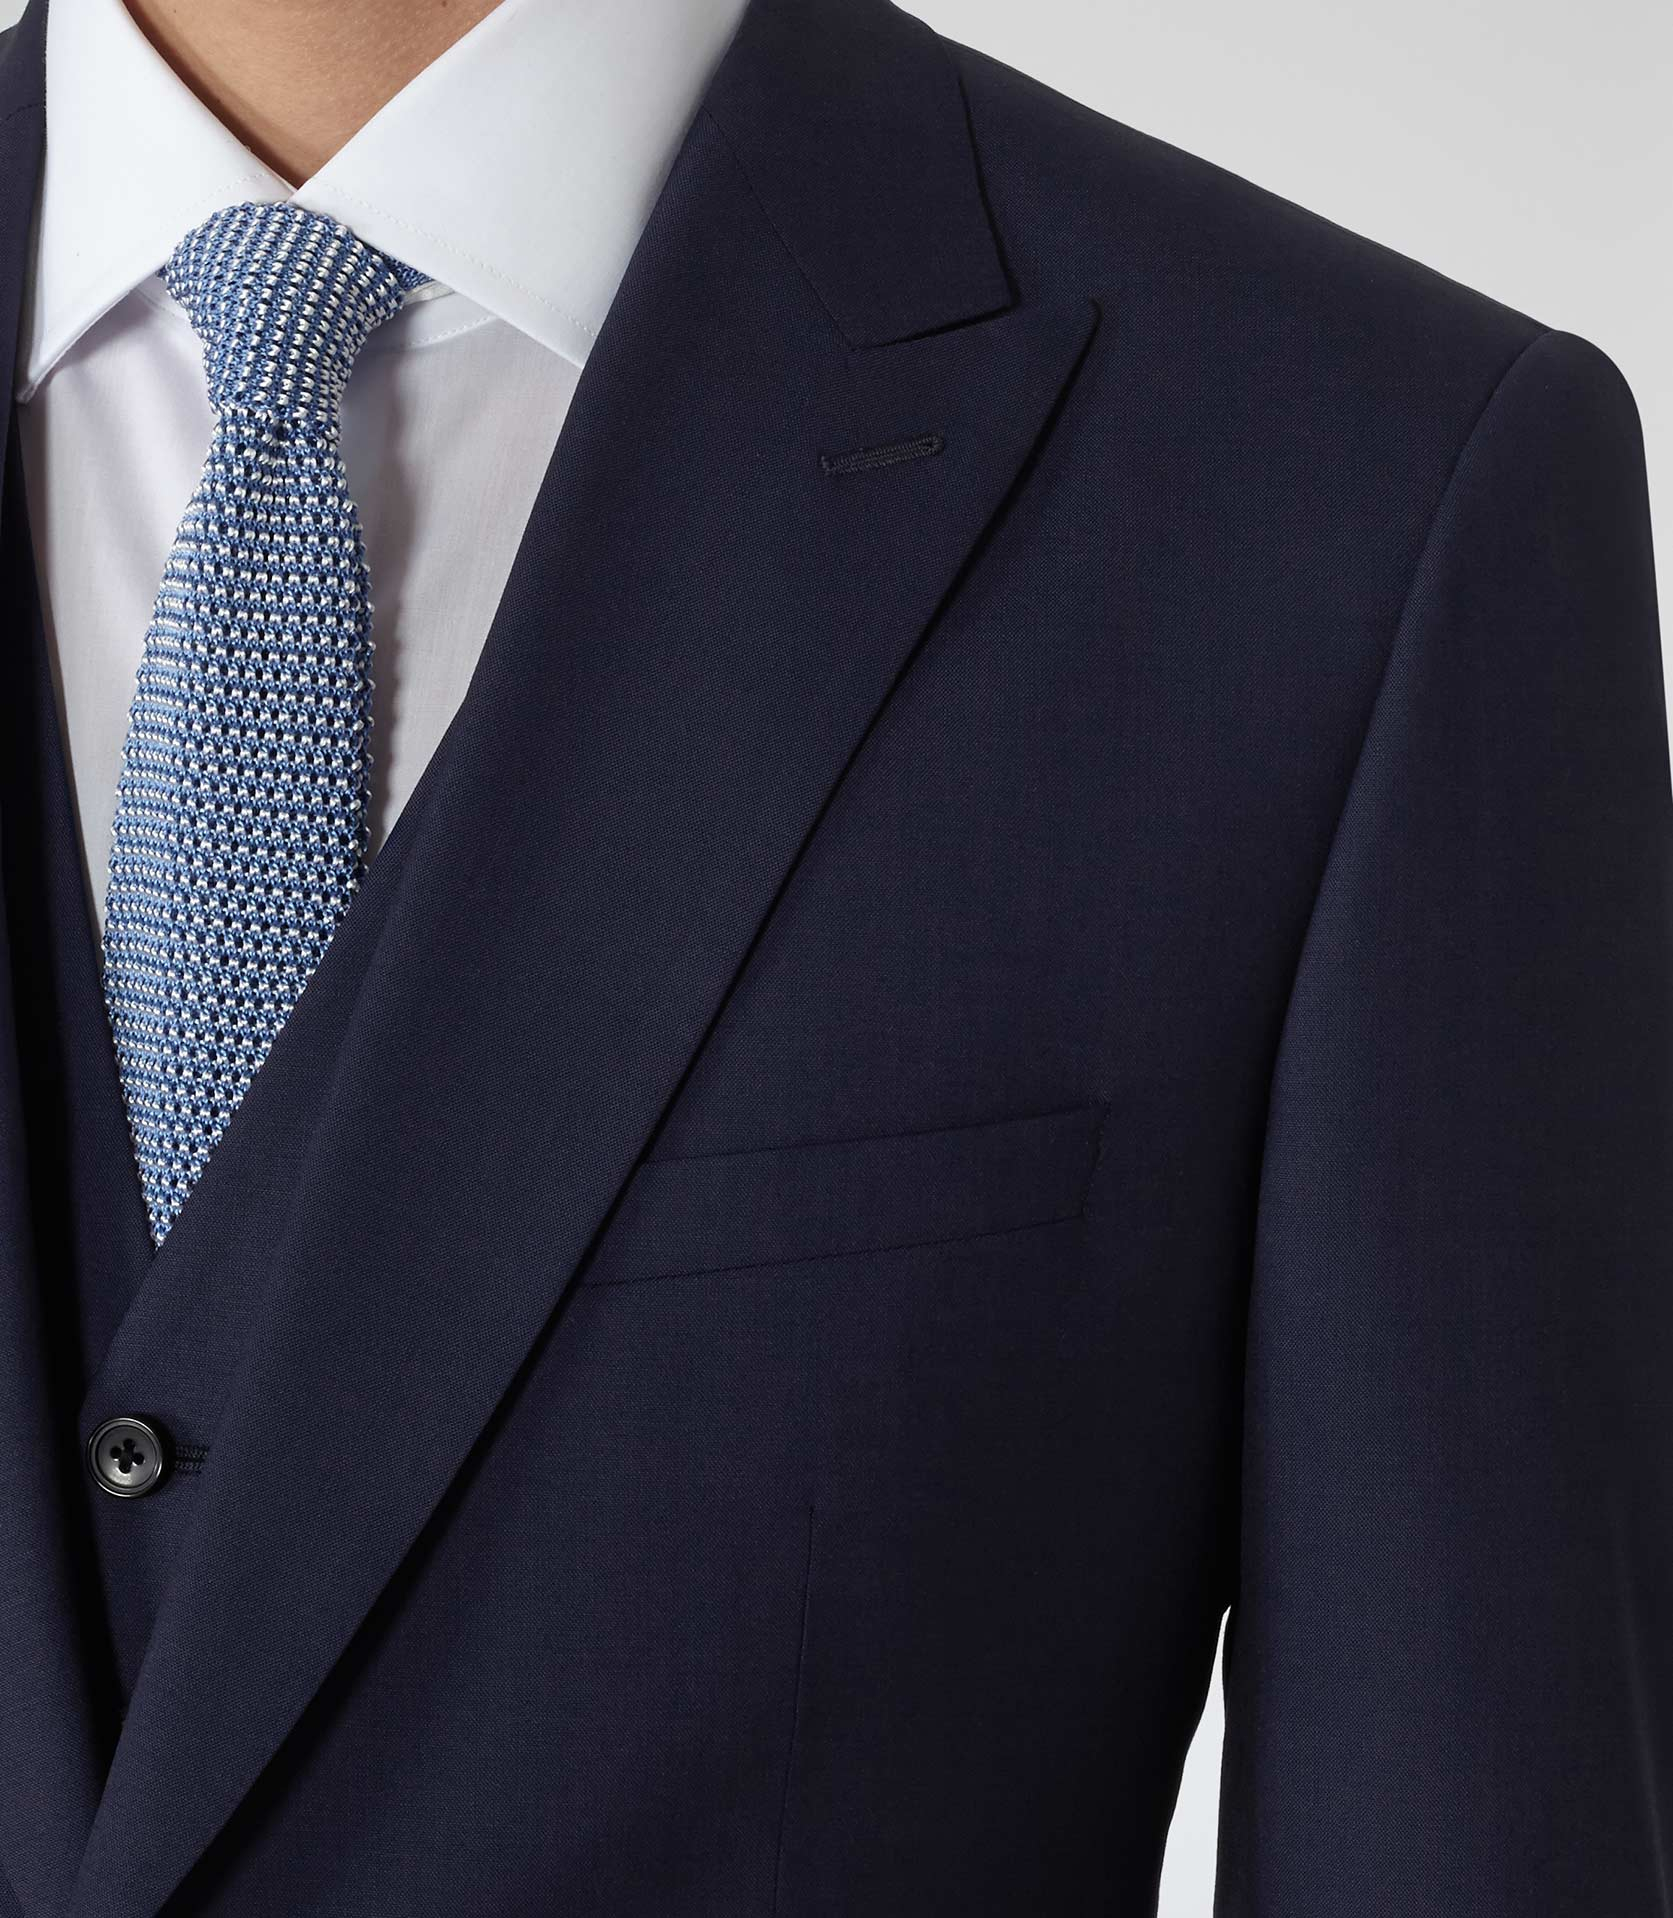 Lyst - Reiss Garda Peak Lapel Three Piece Suit in Blue for Men